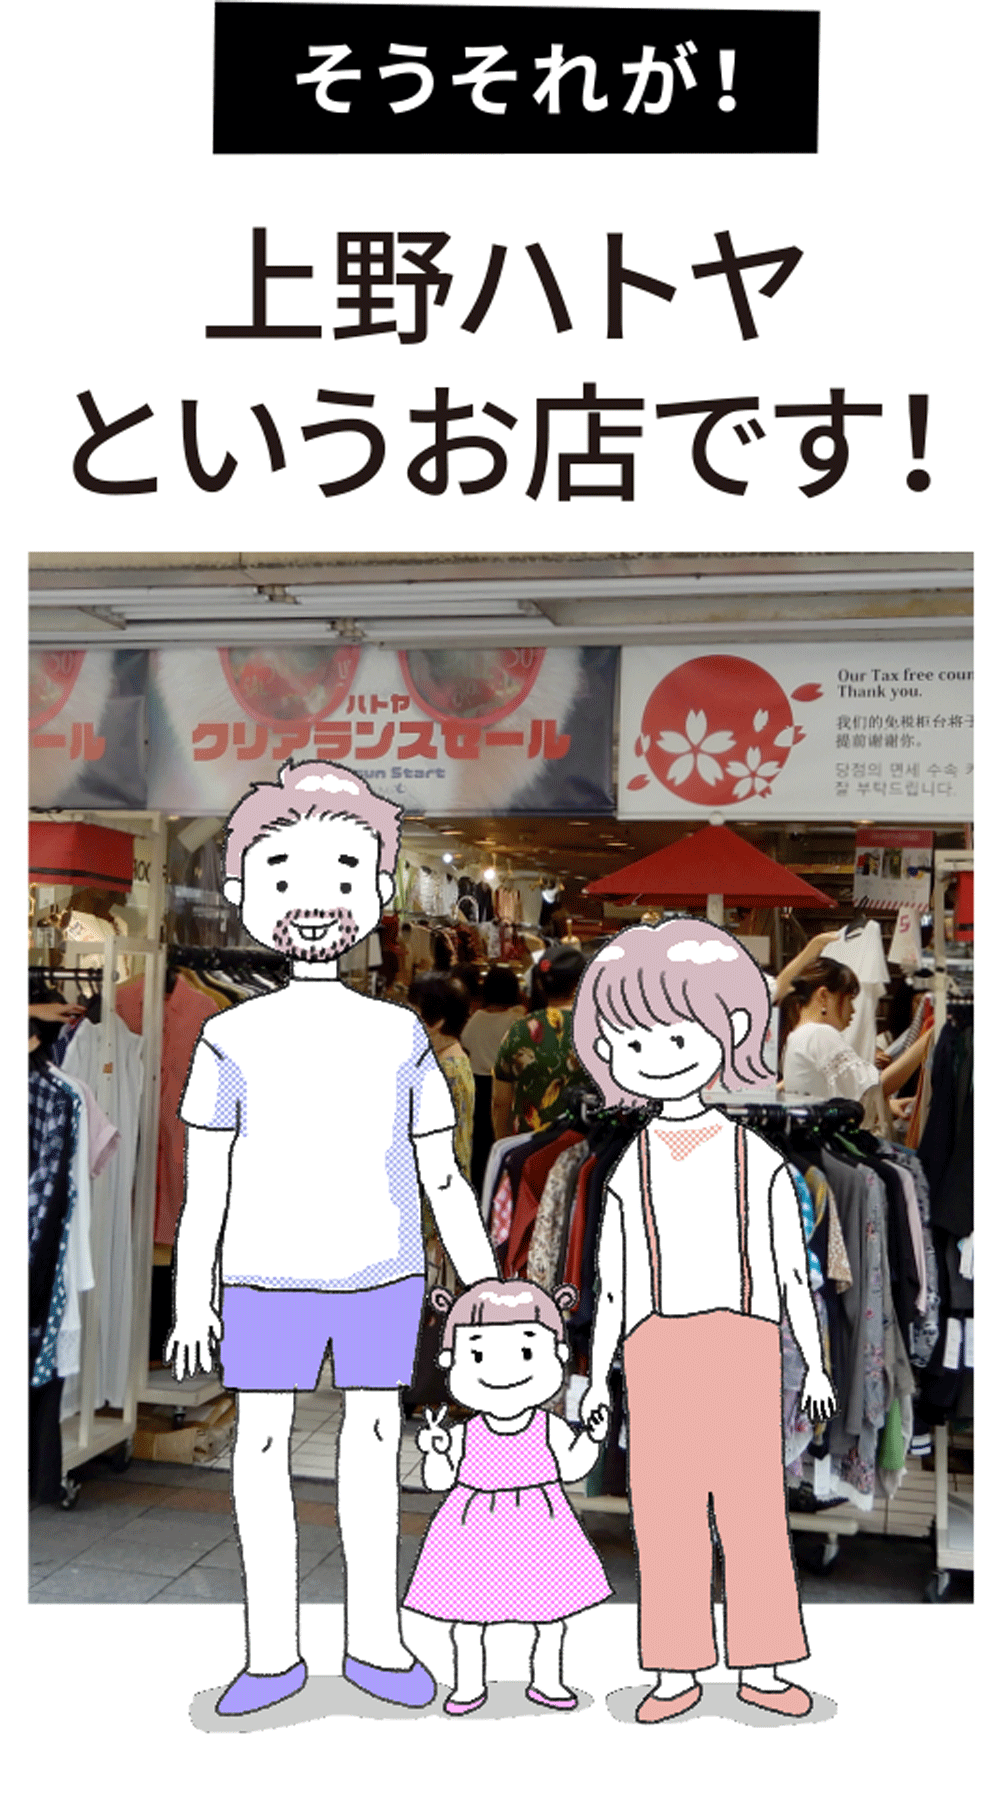 そうそれが！上野ハトヤというお店です！